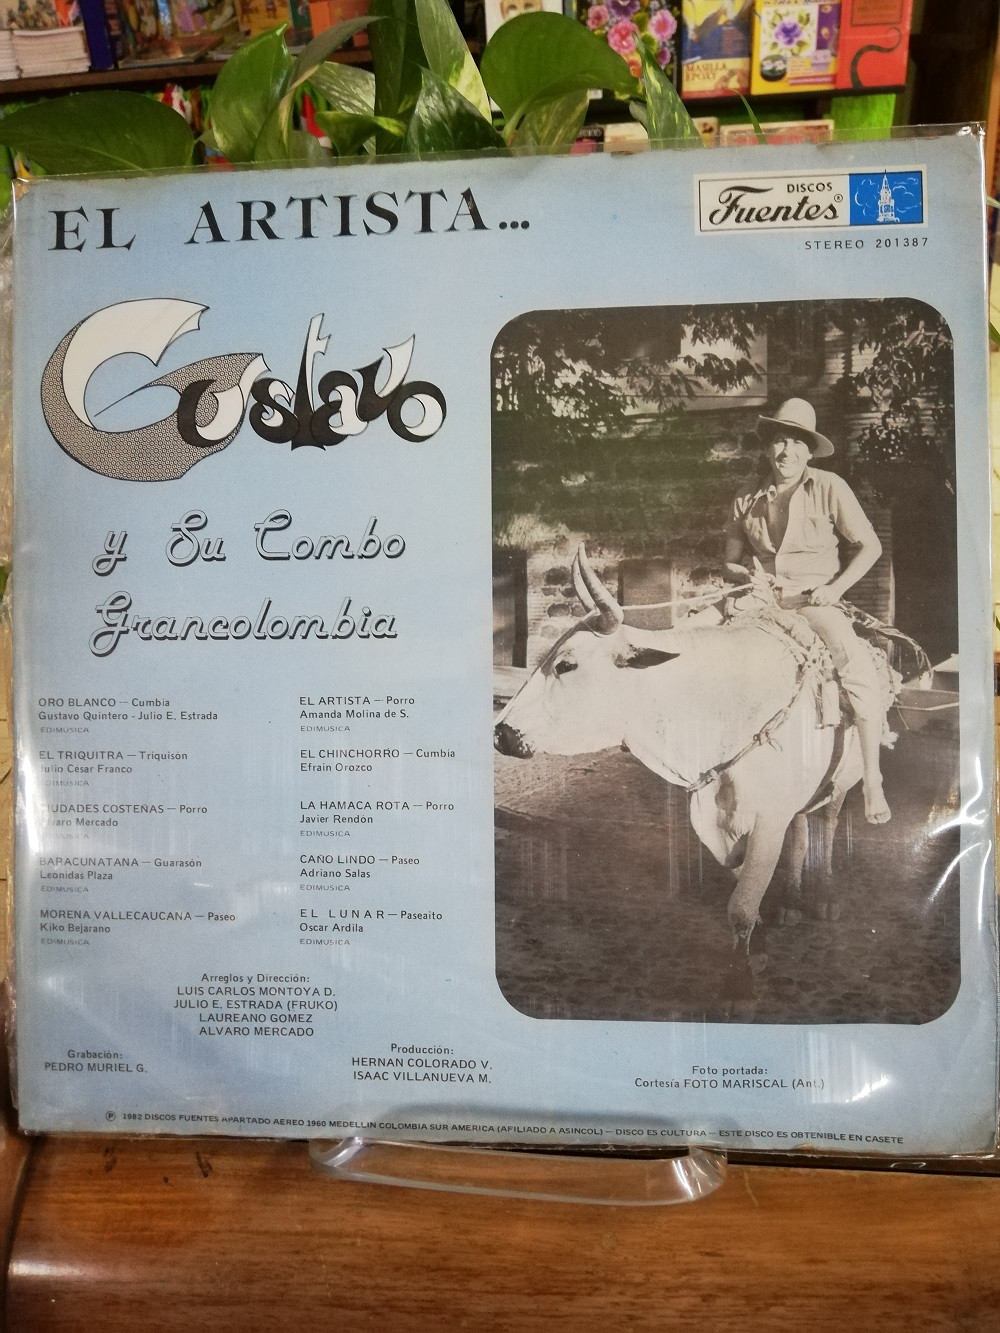 Imagen LP GUSTAVO Y SU COMBO GRANCOLOMBIA - EL ARTISTA 2